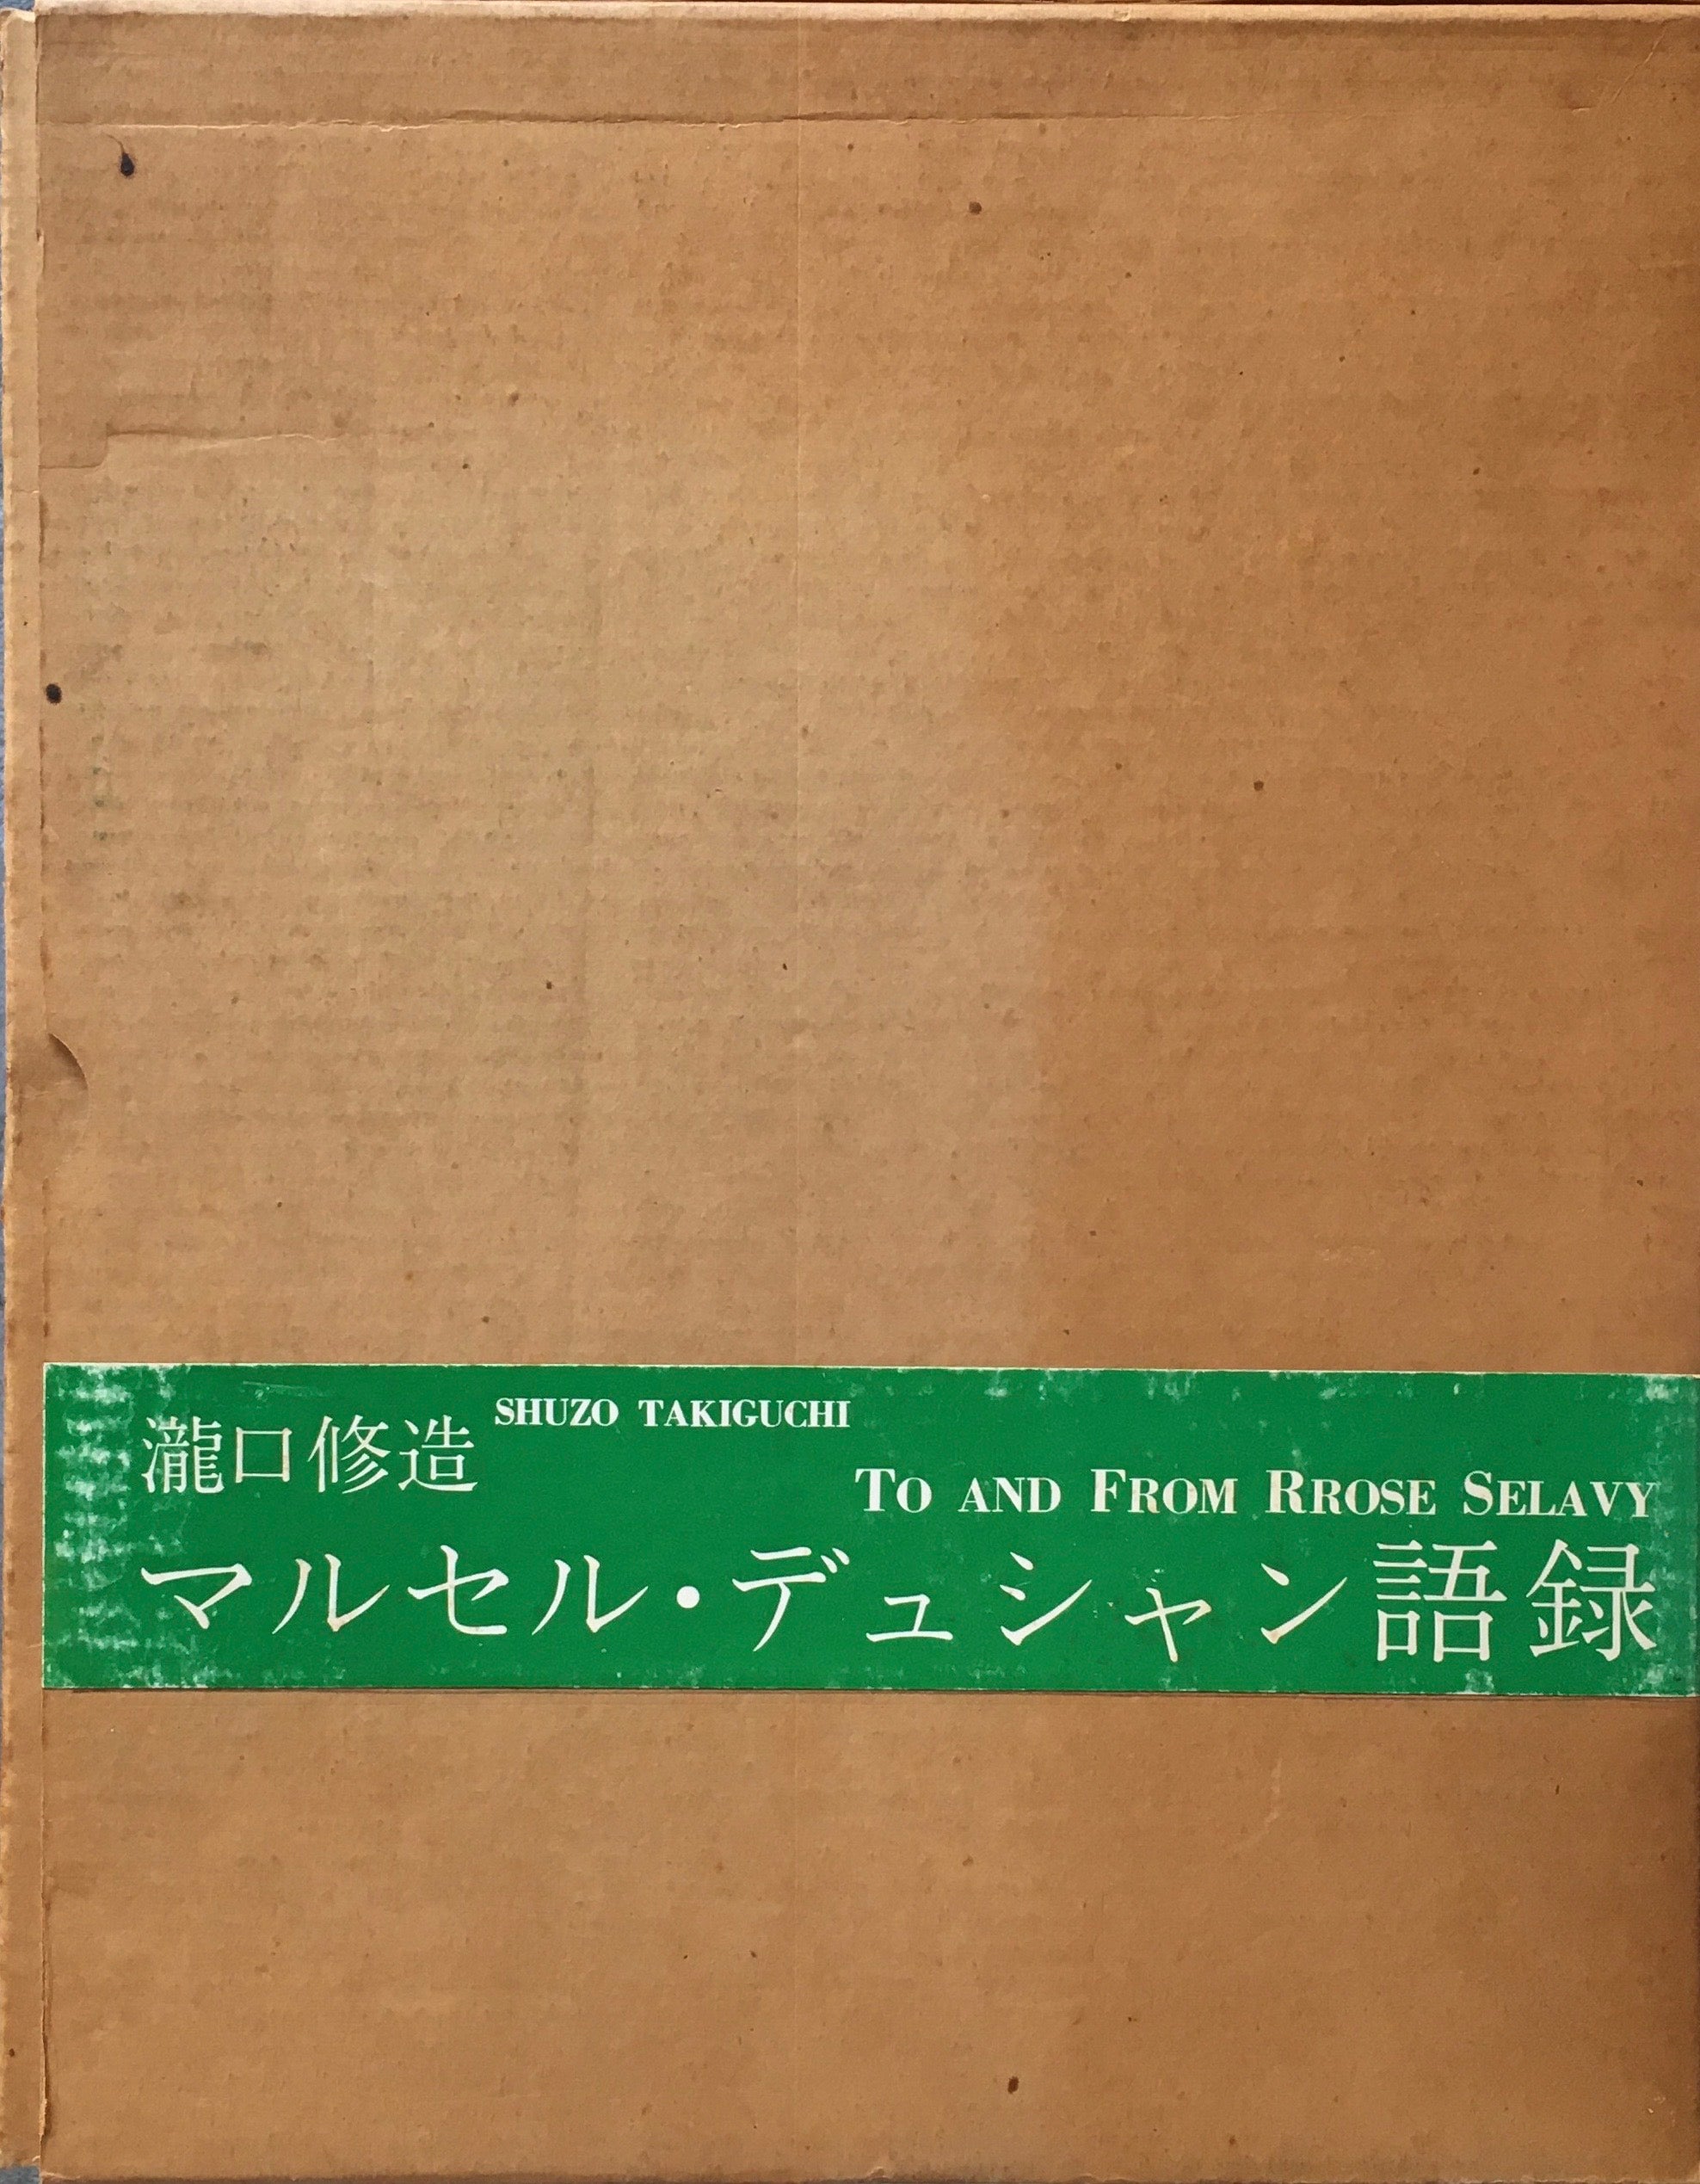 マルセル・デュシャン語録 瀧口修造 B版 限定500部 1968 東京、ローズ 